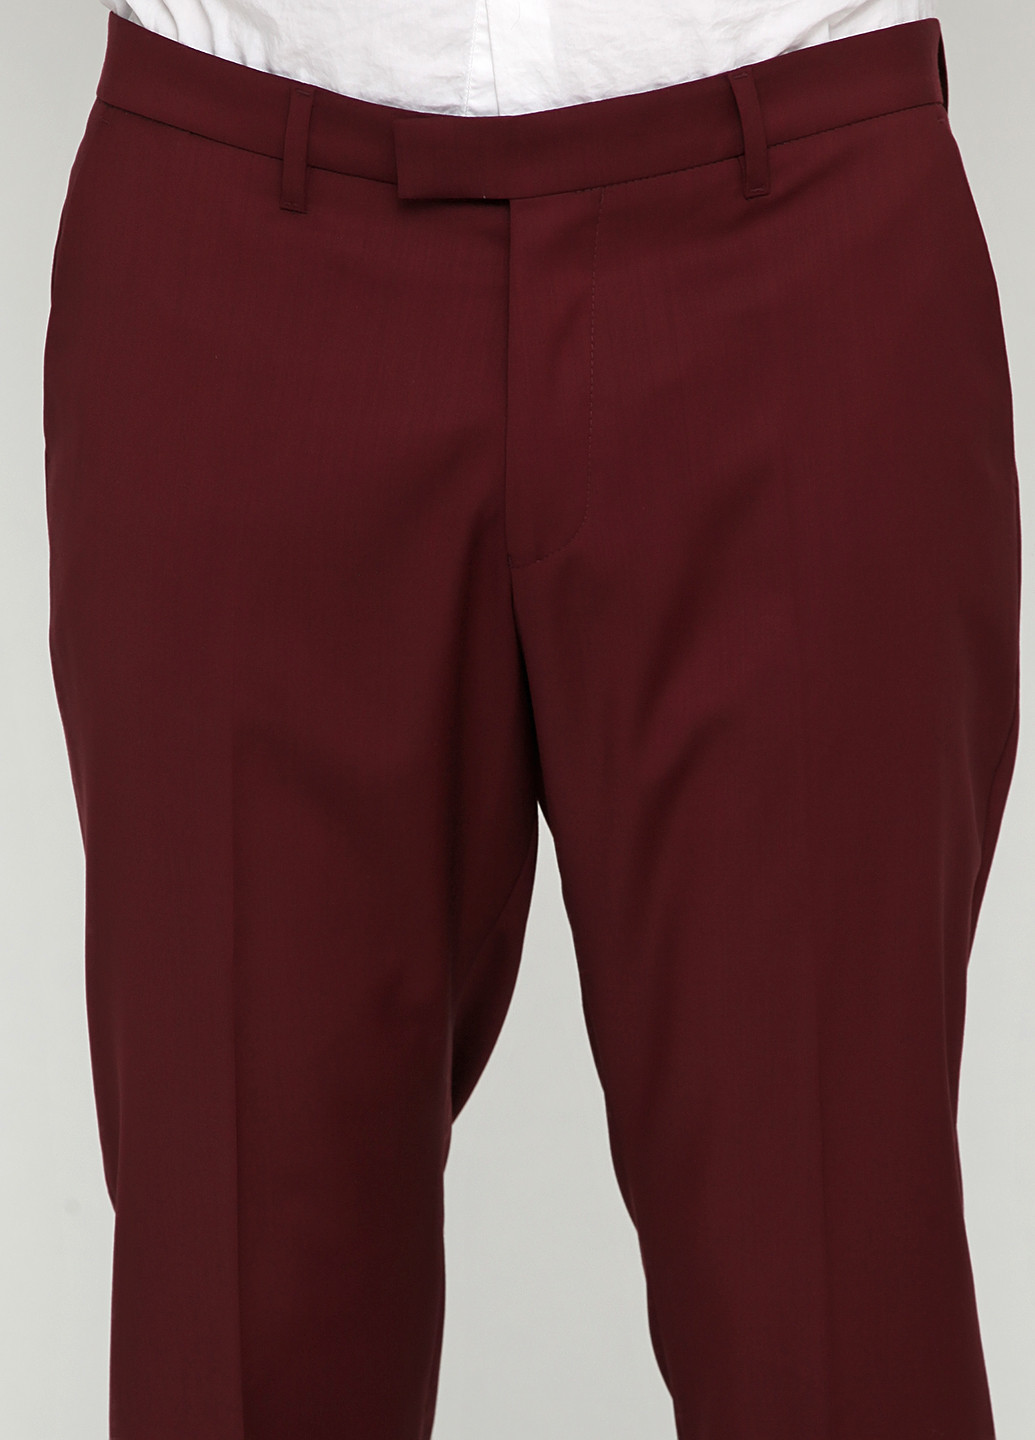 Бордовый демисезонный костюм (пиджак, брюки) брючный Drykorn